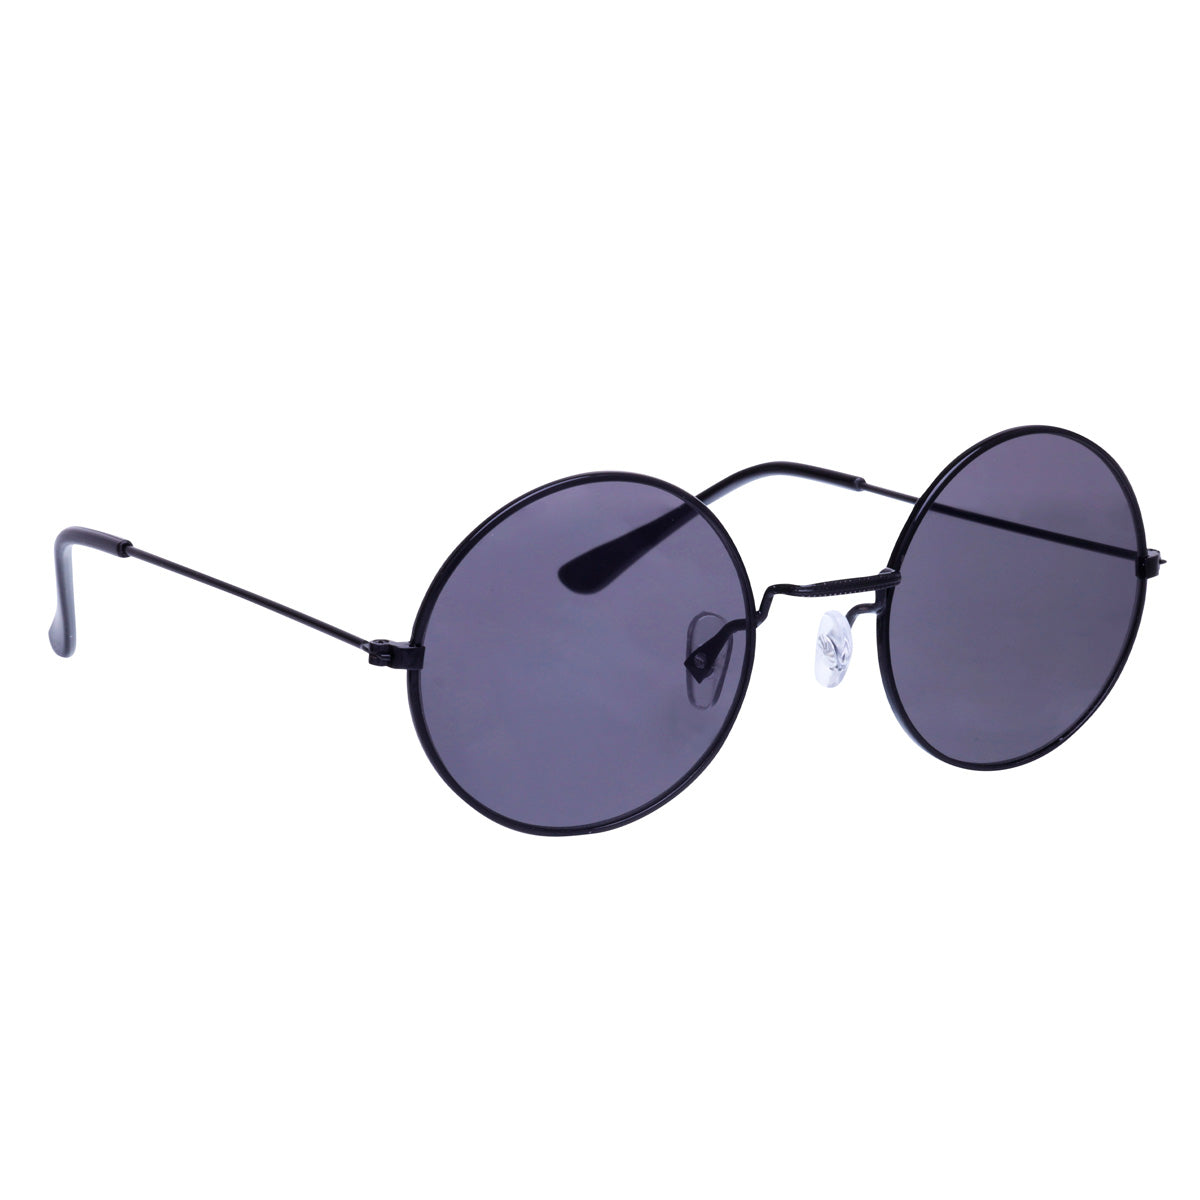 Classic aviator round aviator sunglasses